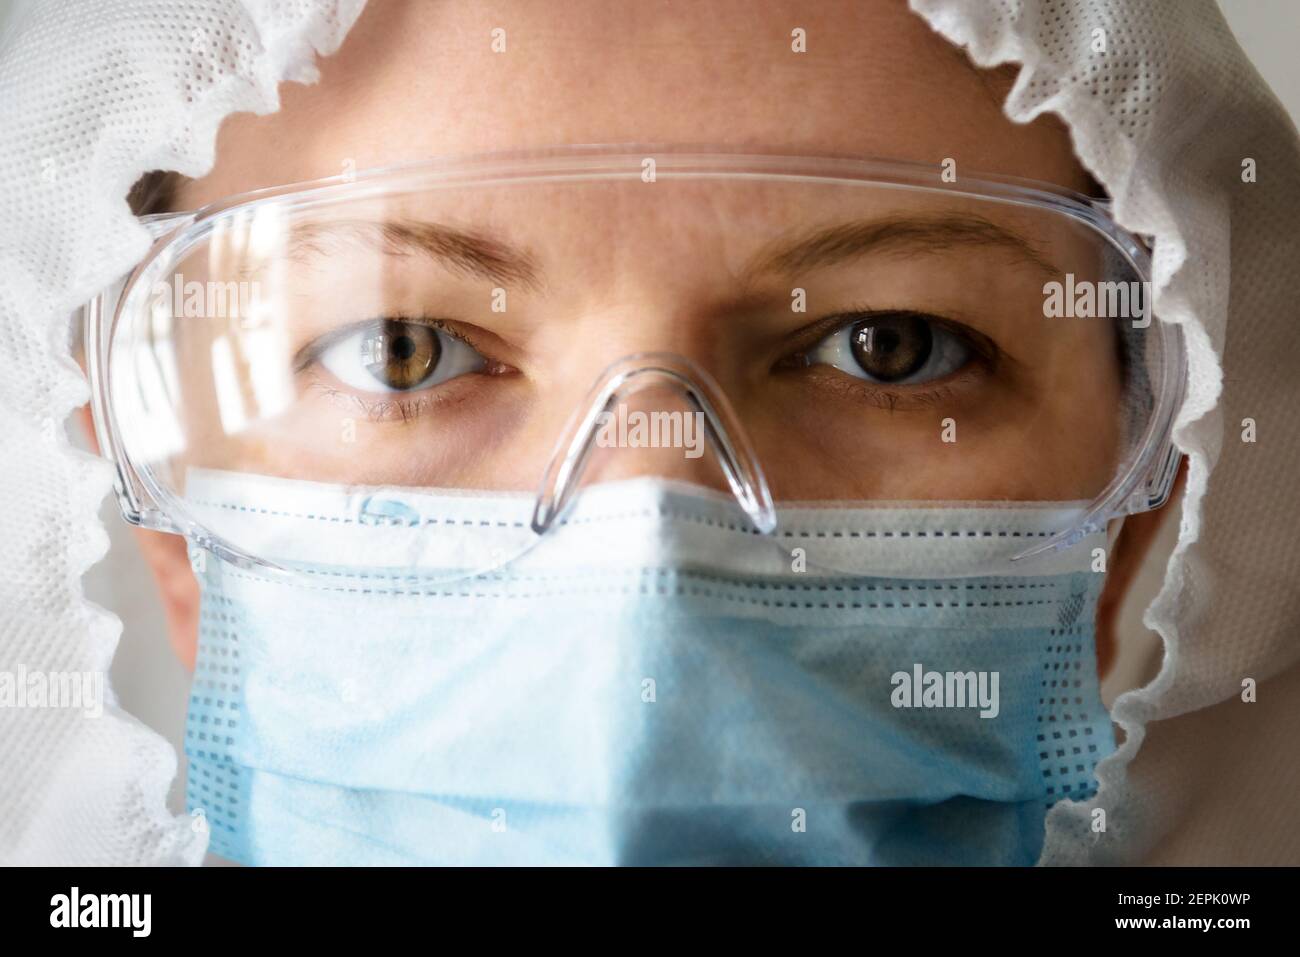 Medico o infermiere in tuta professionale a causa della pandemia del coronavirus COVID-19, ritratto del medico in primo piano con i dispositivi di protezione individuale (PPE), occhi Foto Stock